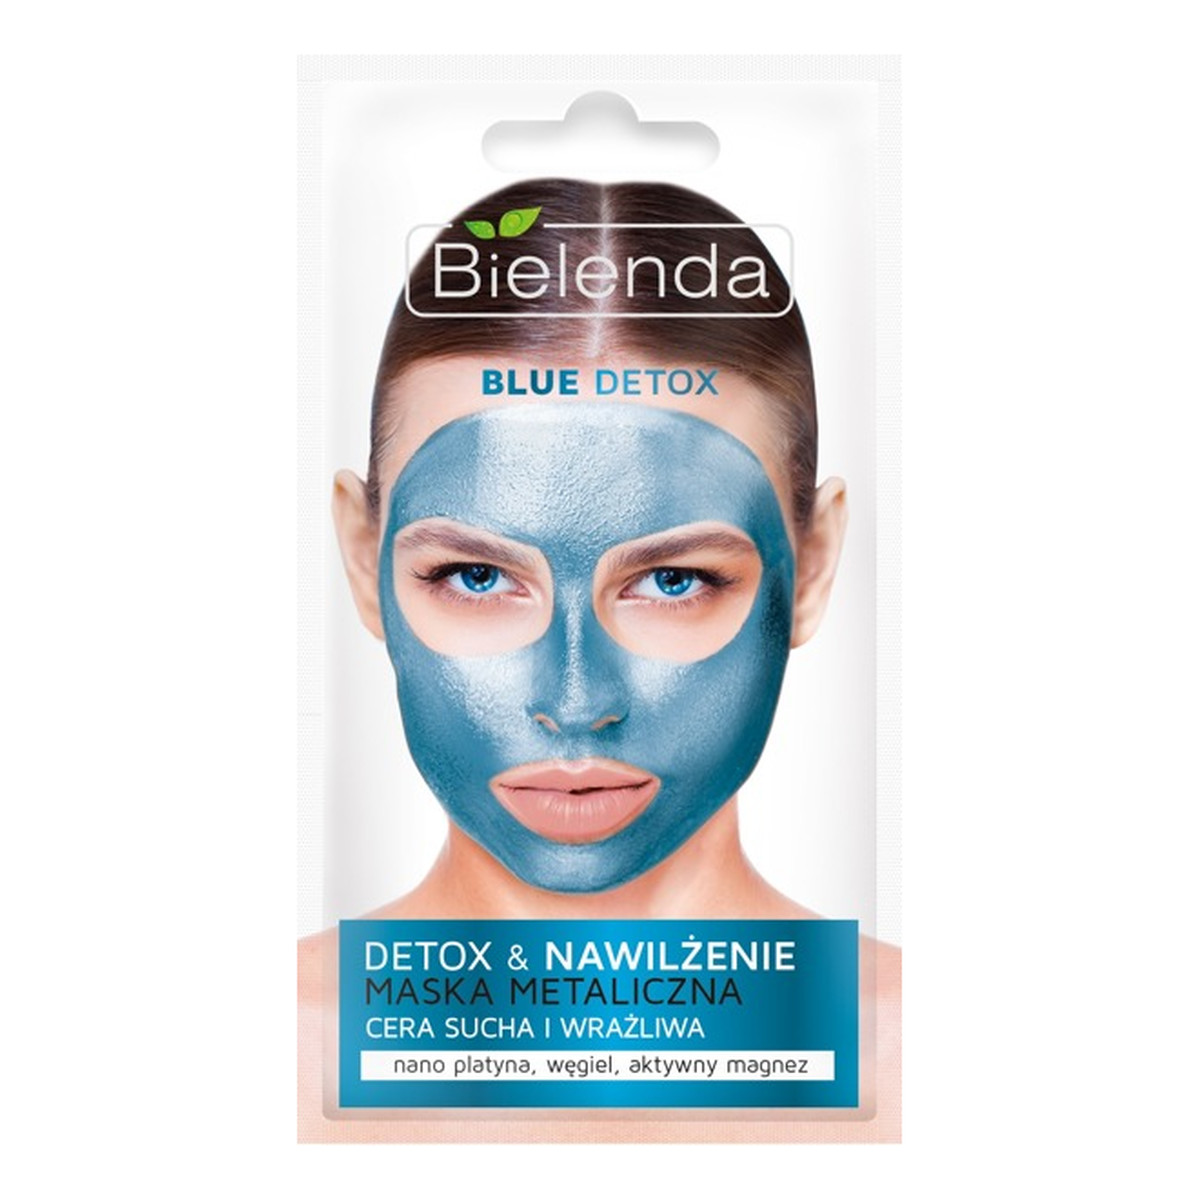 Bielenda Blue Detox Maska Metaliczna nawilżająca - cera sucha i wrażliwa 8g